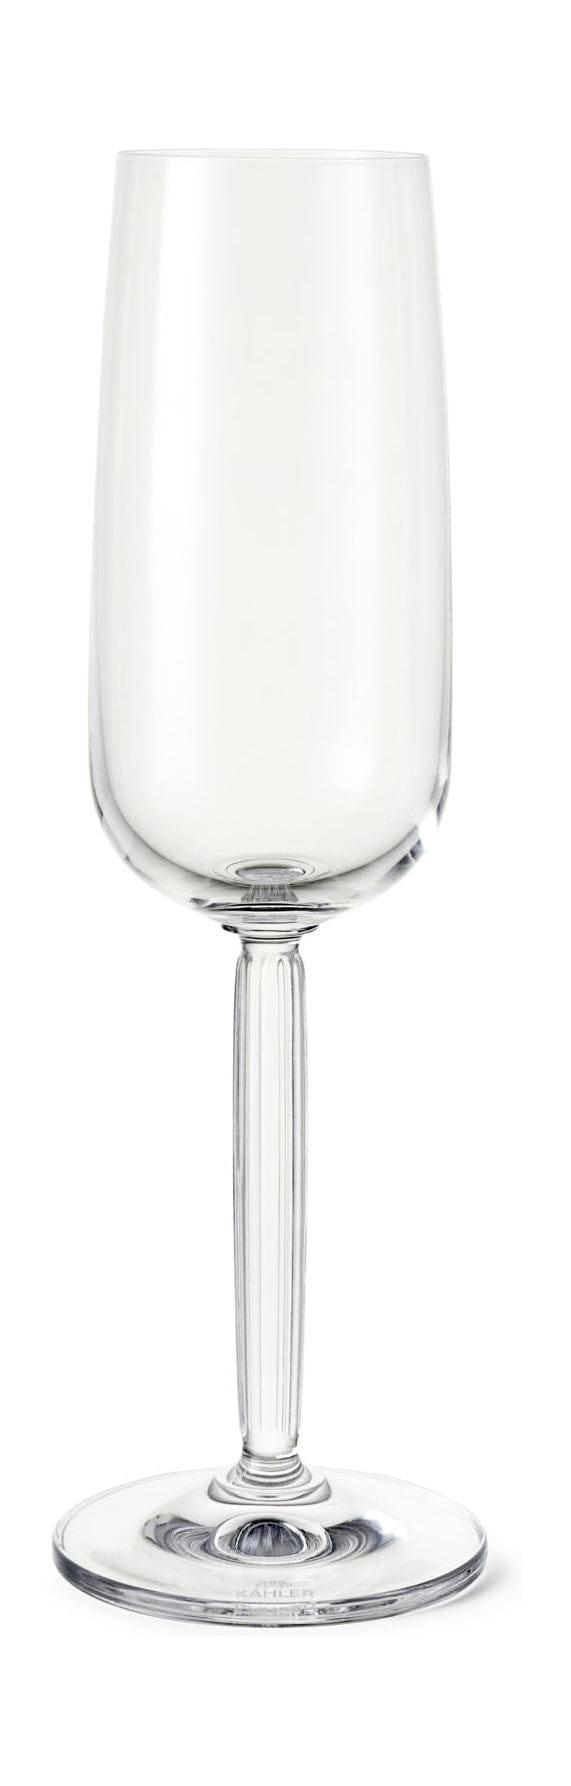 Kähler Hammershøi Champagne Glass -sæt på 240 ml, klart